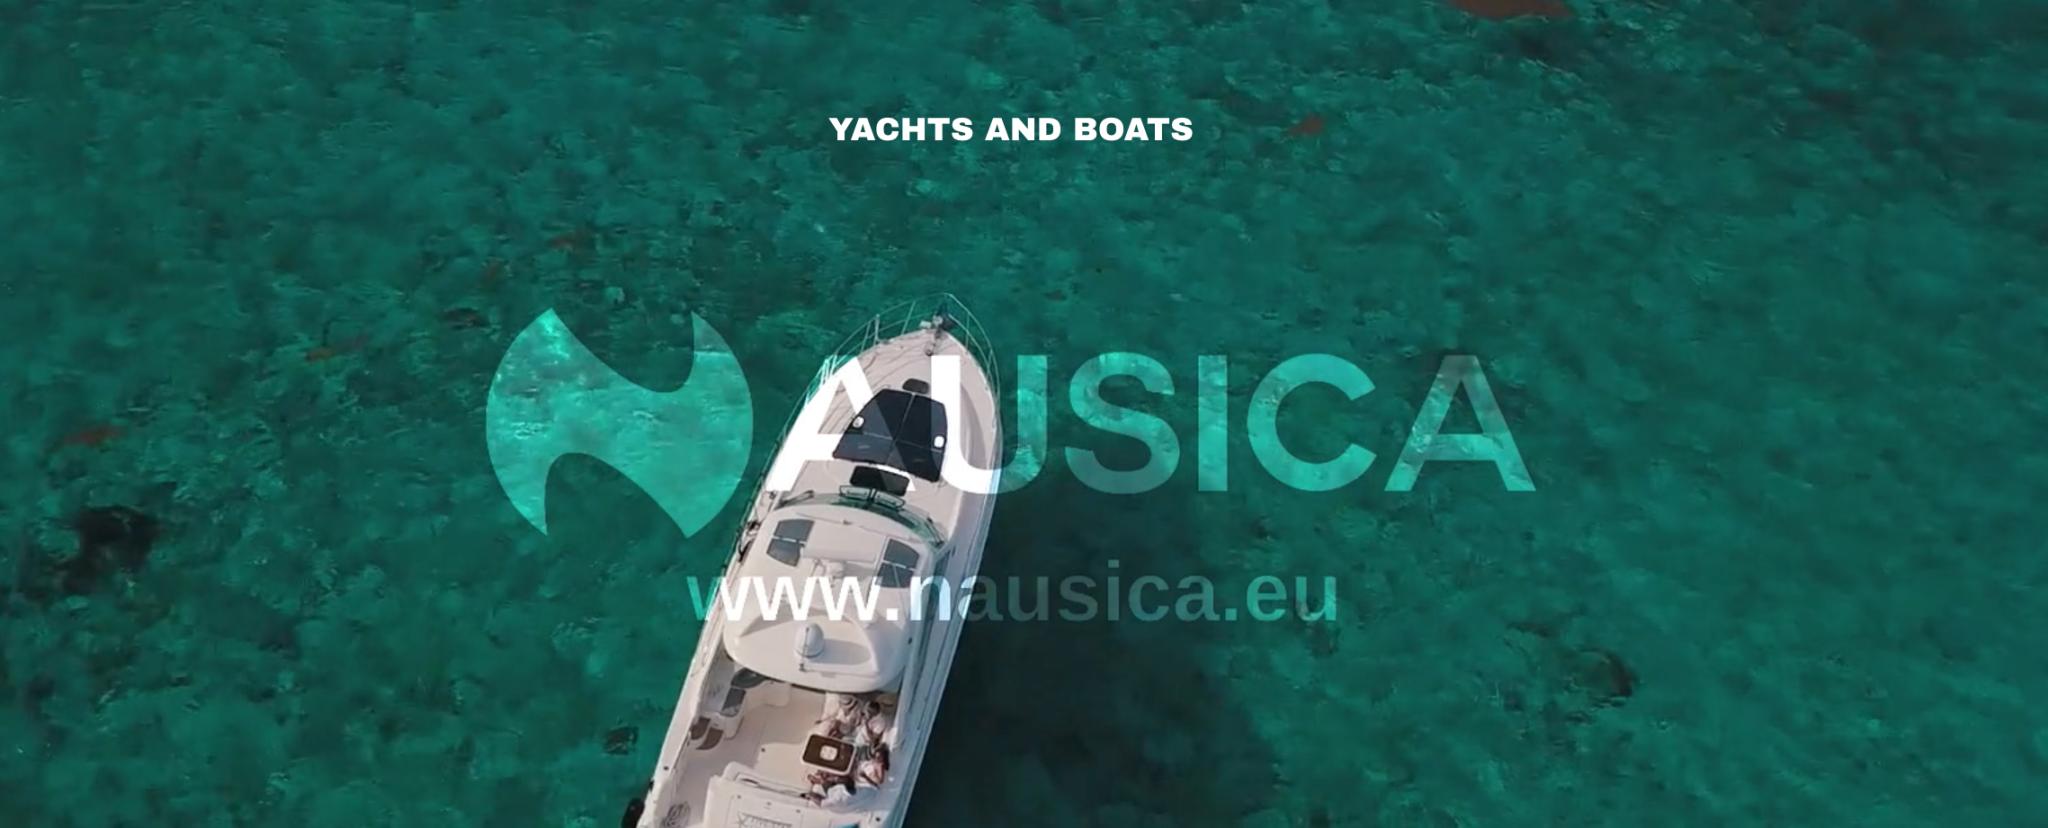 Nausica Yachting